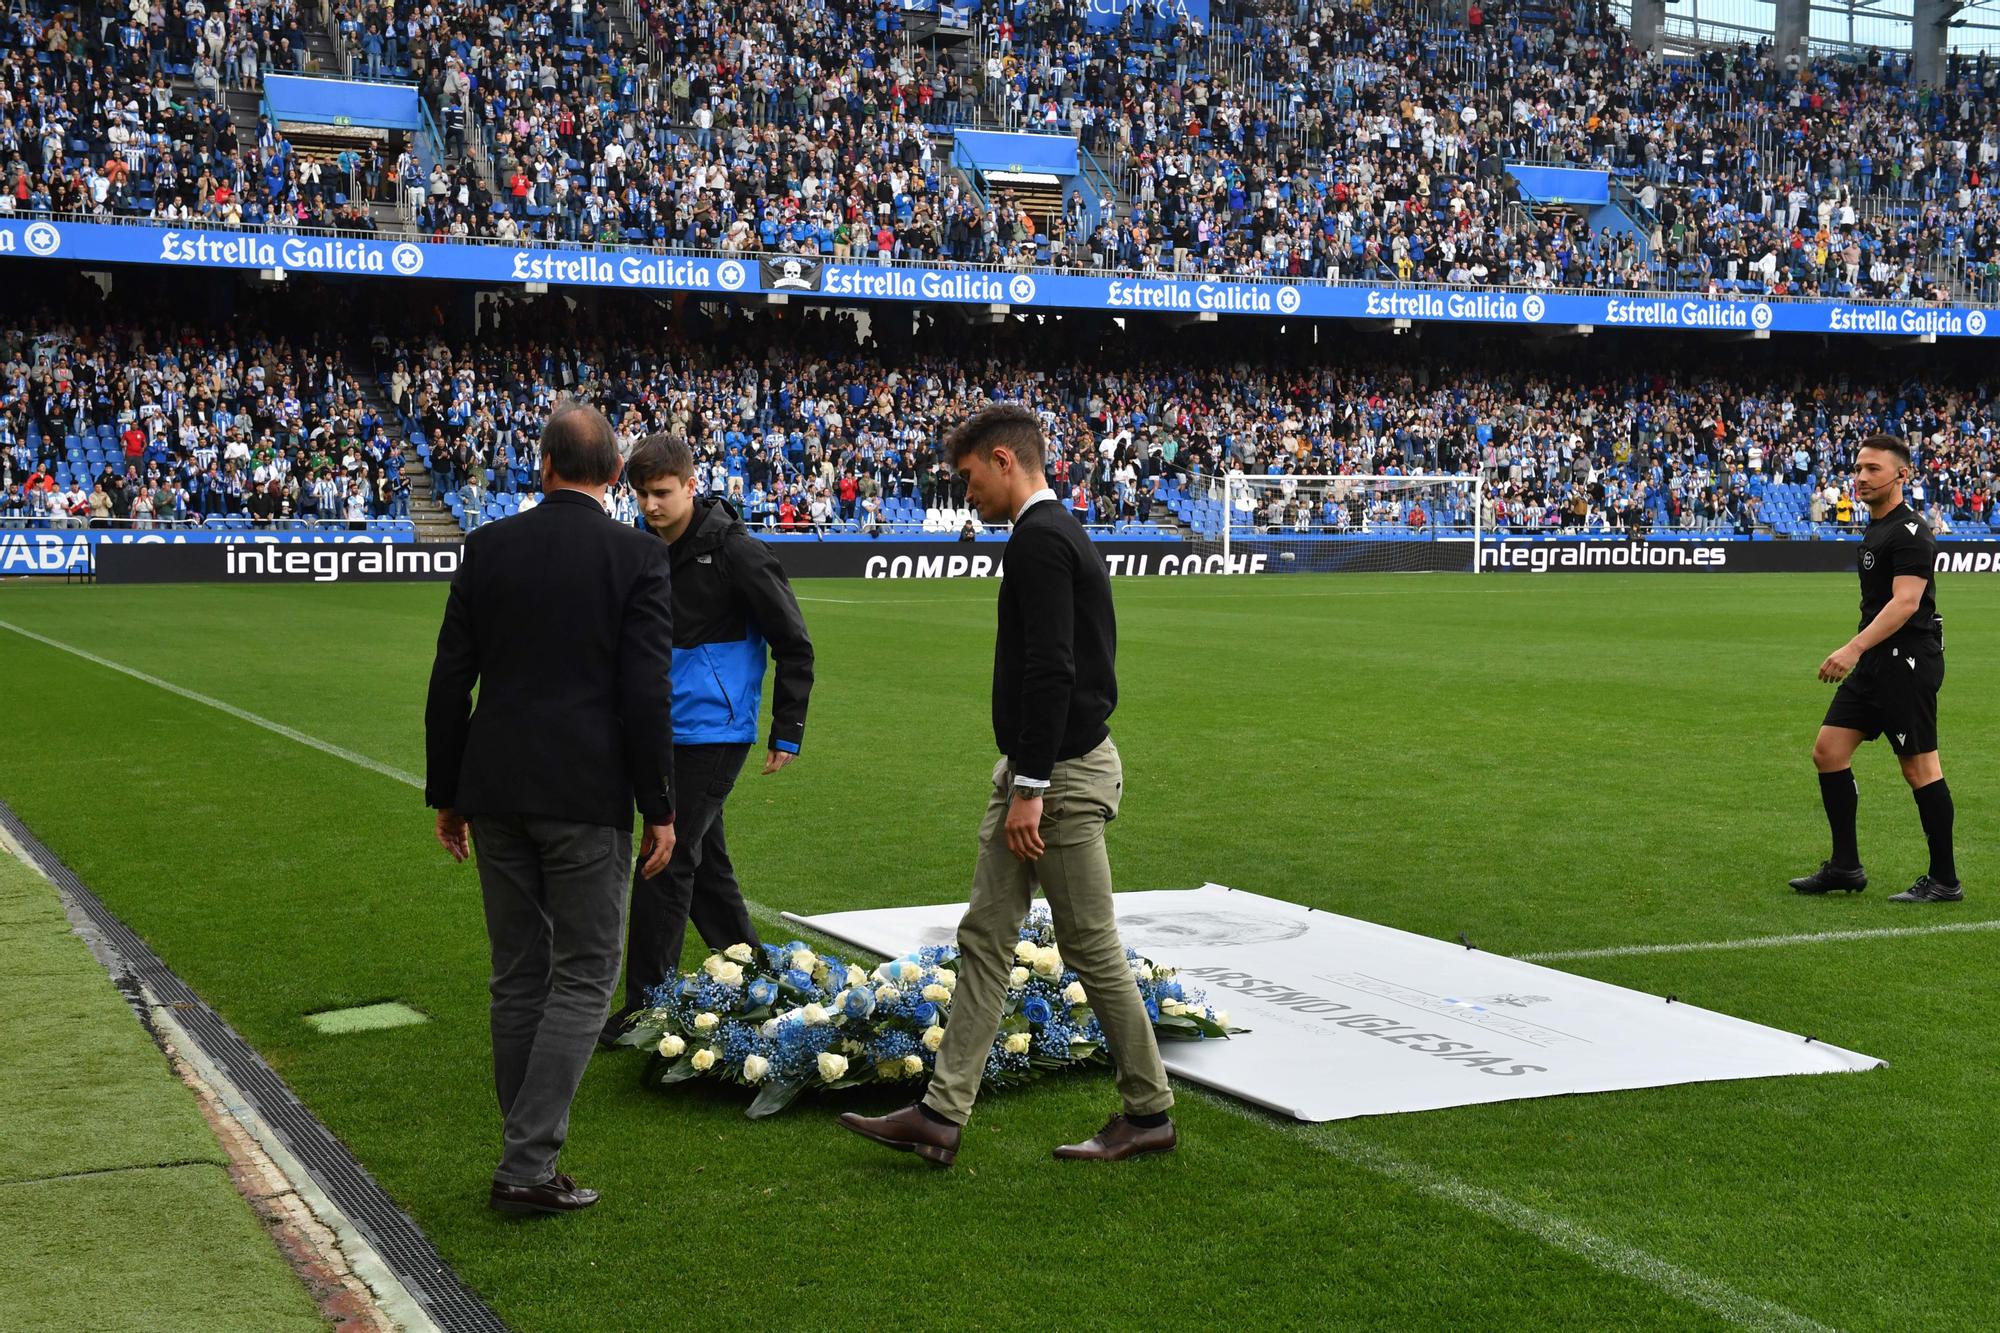 Homenaje a Arsenio Iglesias en Riazor antes del Deportivo-Alcorcón